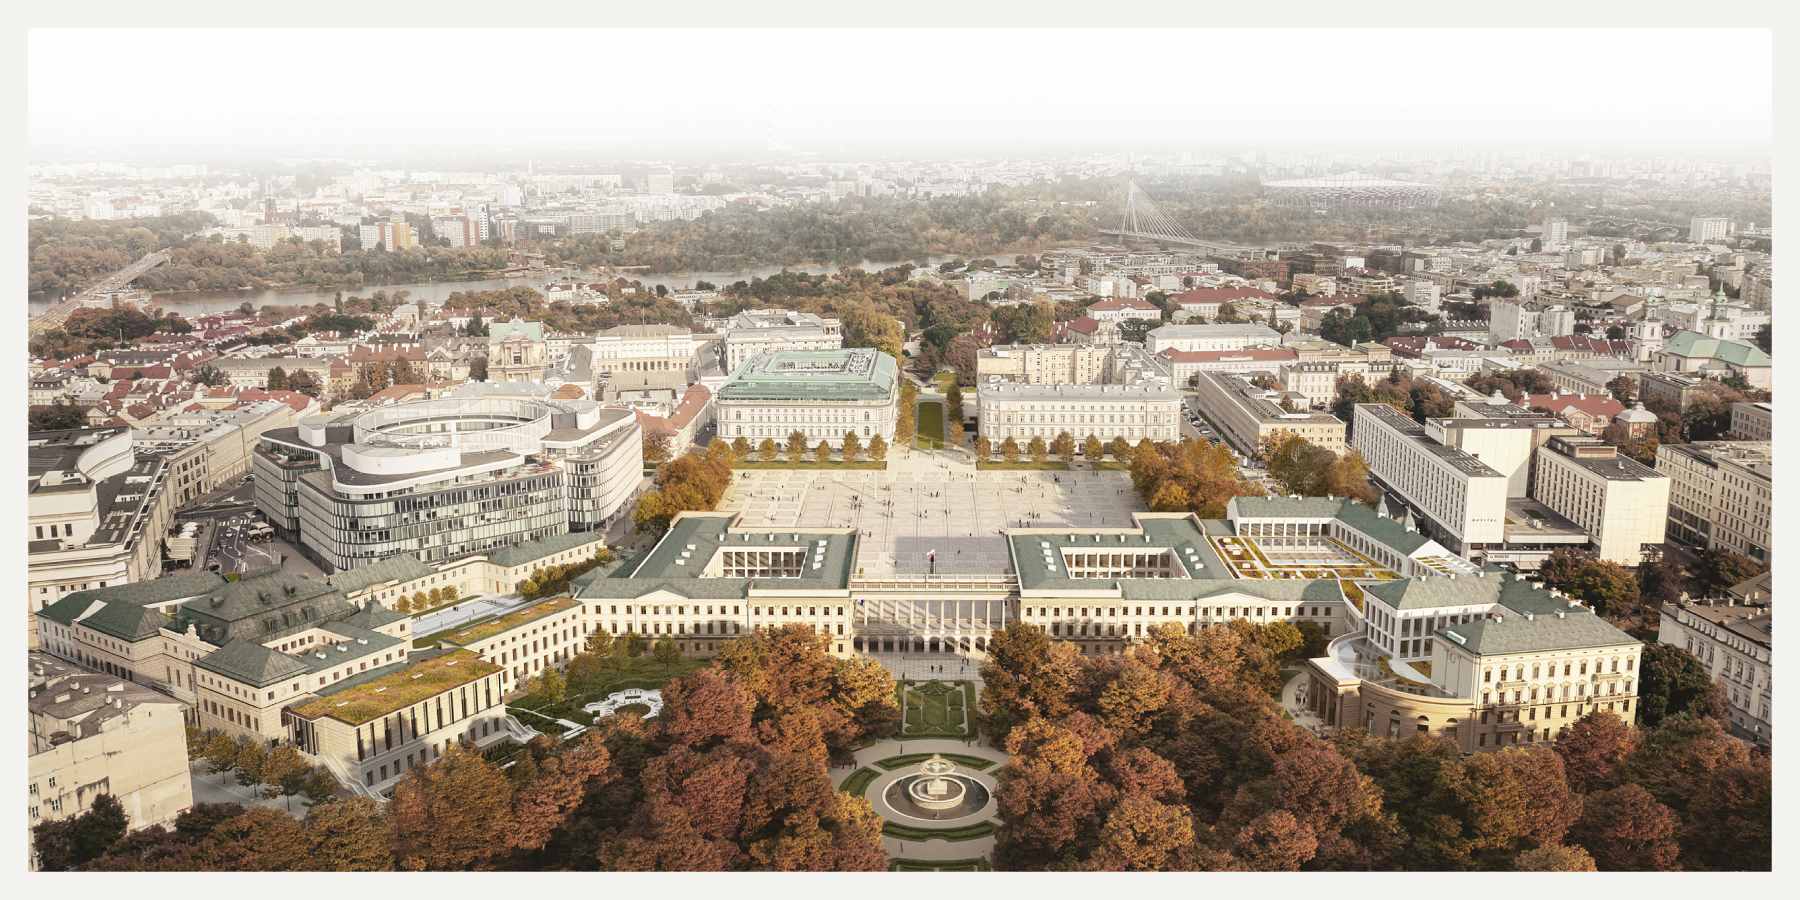 Grafika pokazująca jak będzie wyglądał Pałac Saski wraz z sąsiadującymi gmachami. Widok z góry na całą pierzeję rozciągającą się między Ogrodem Saskim a Placem Piłsudskiego.